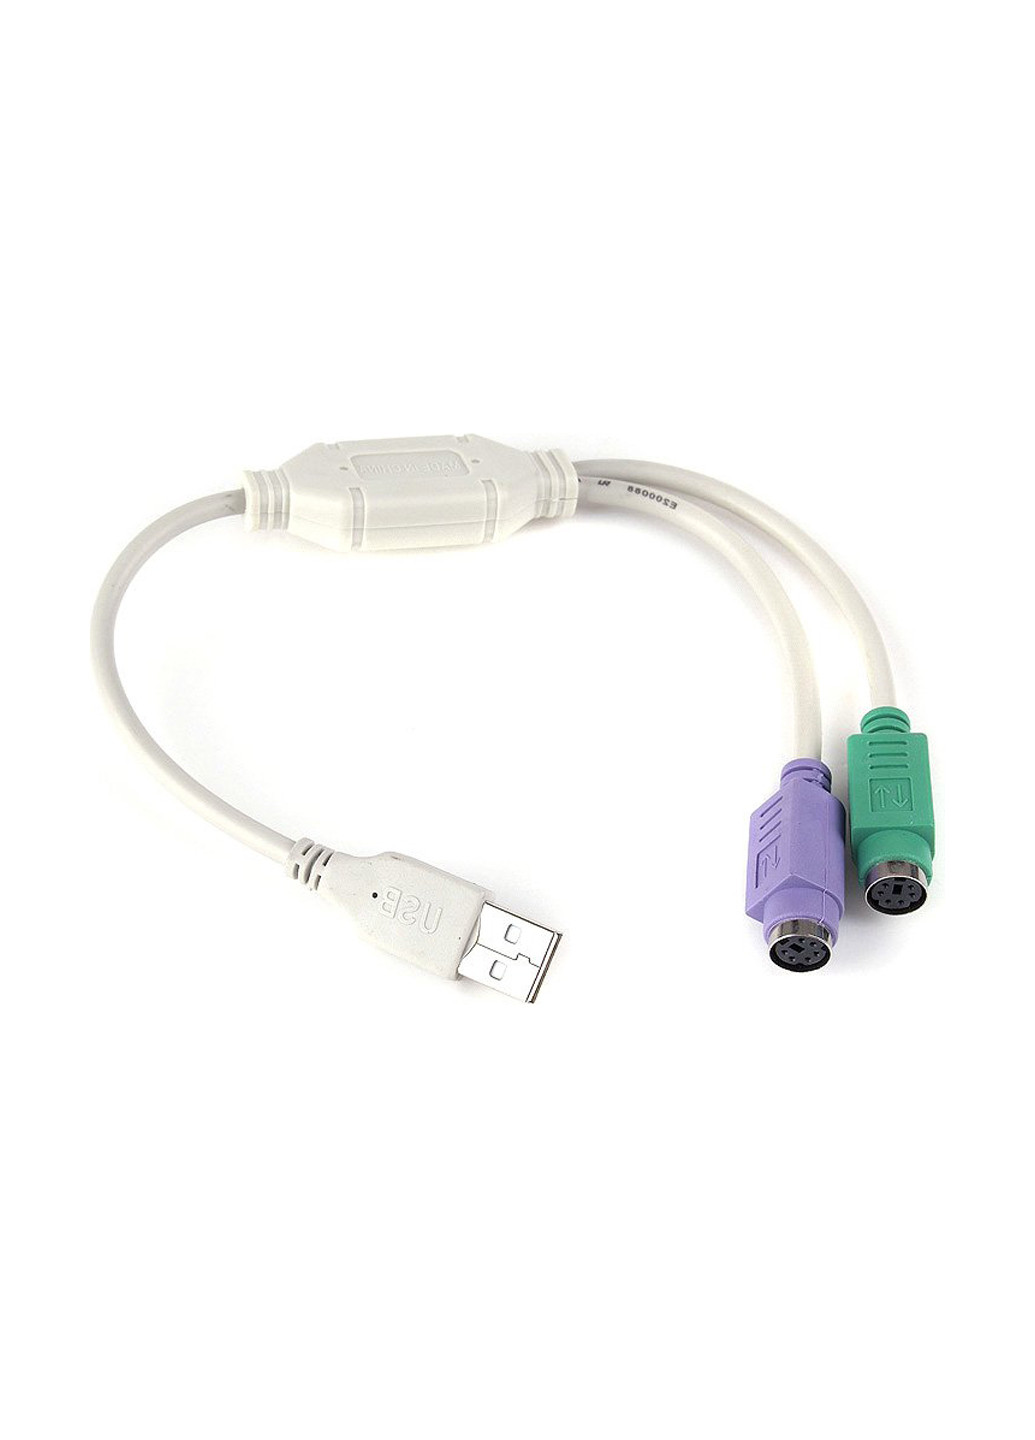 Перехідник USB А-папа / 2х PS / 2. 30см (UAPS12) Cablexpert usb а-папа/2х ps/ 2. 30см (uaps12) (137500425)